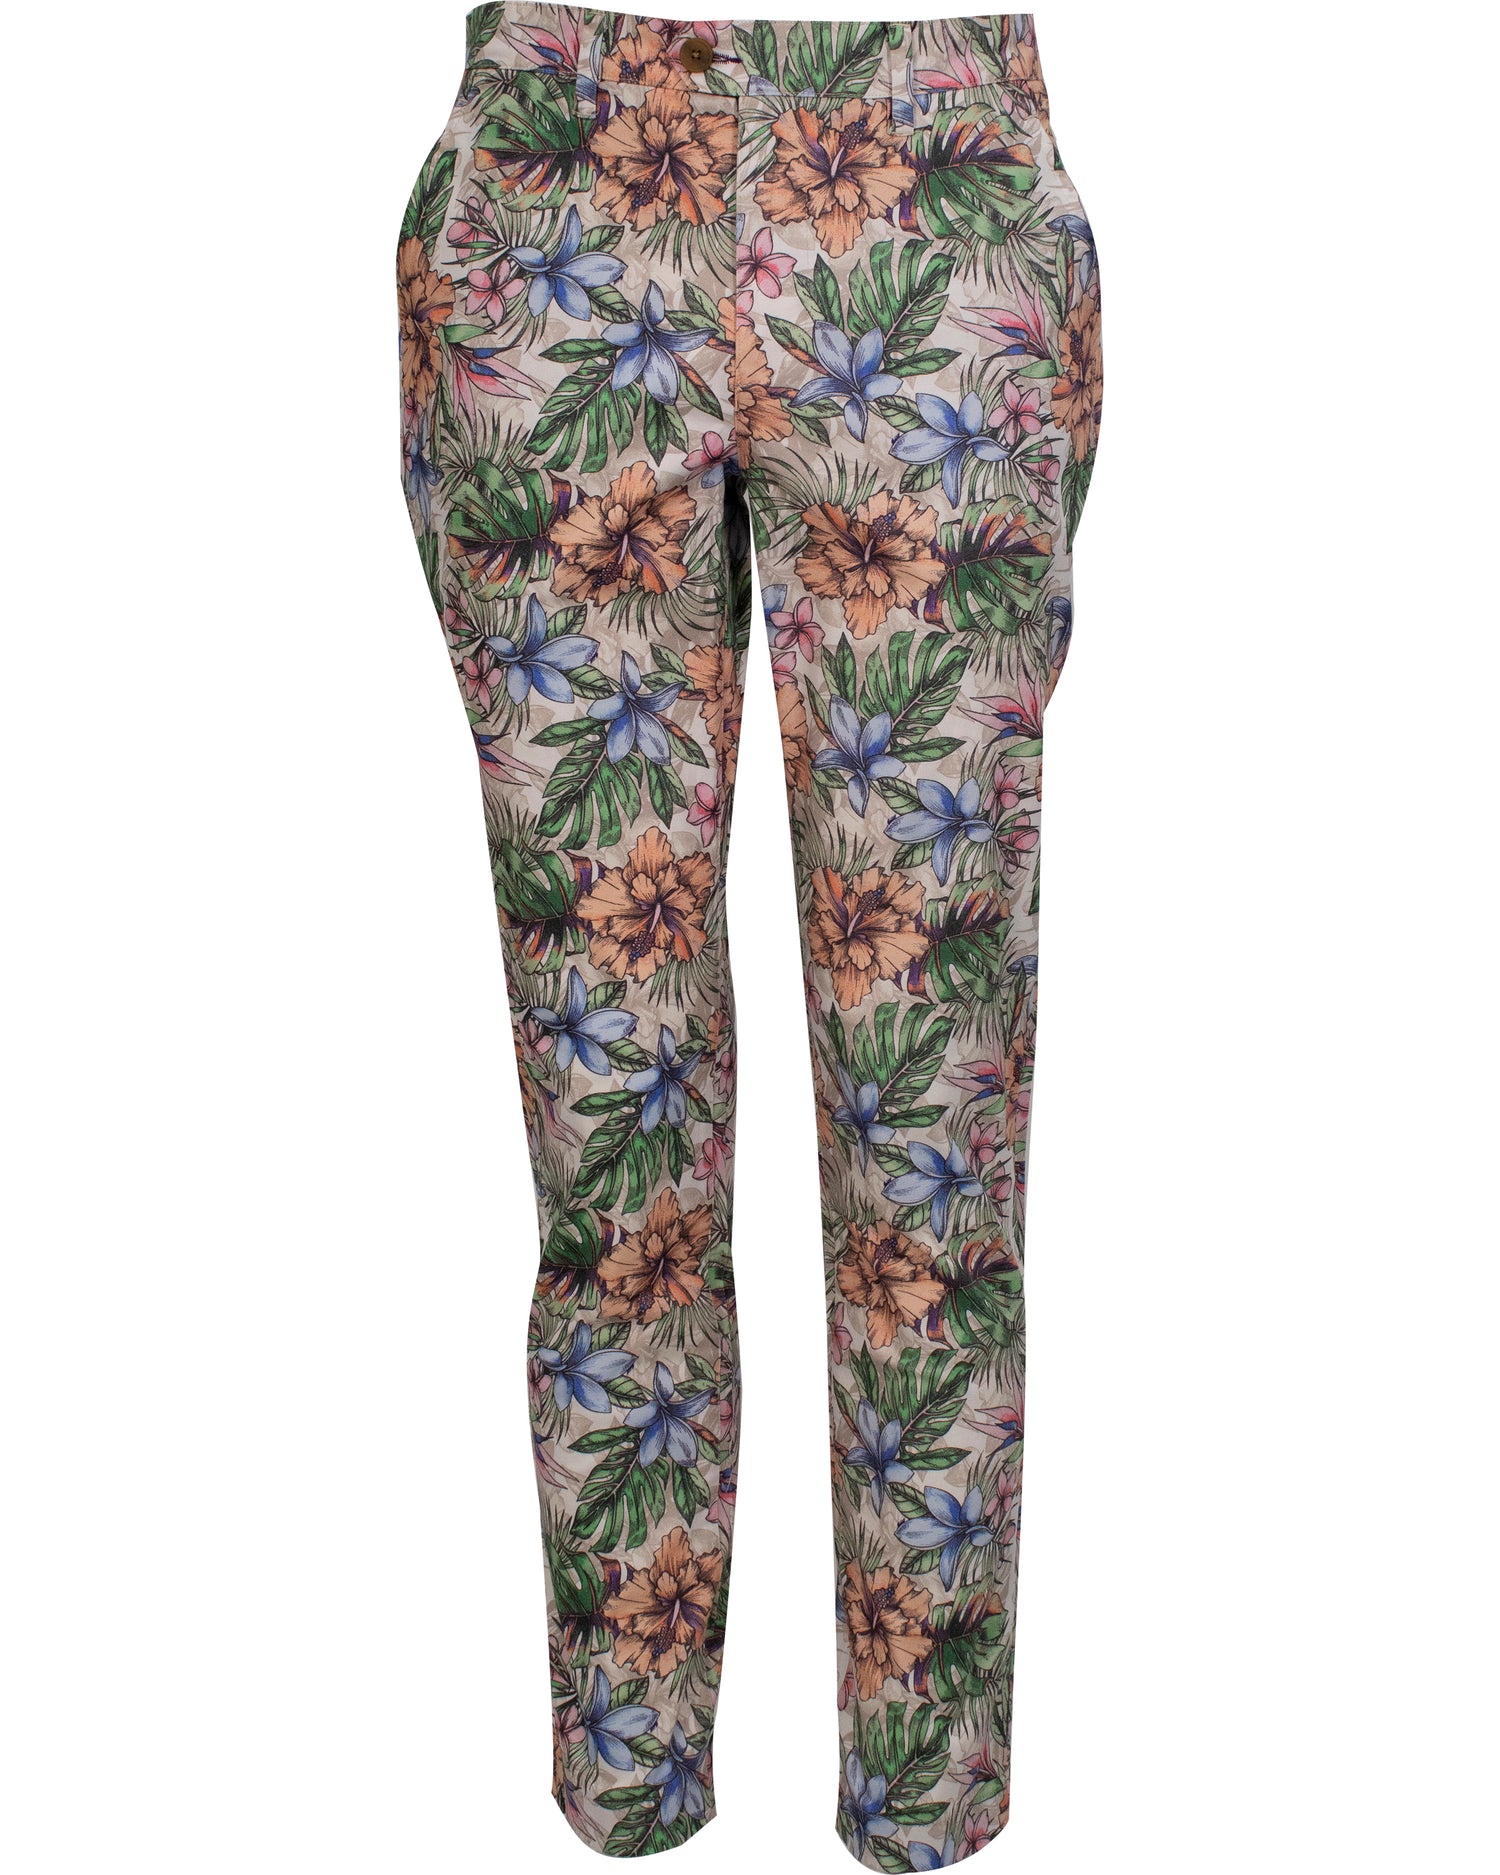 Multi colored floral printed menswear trouser/slack